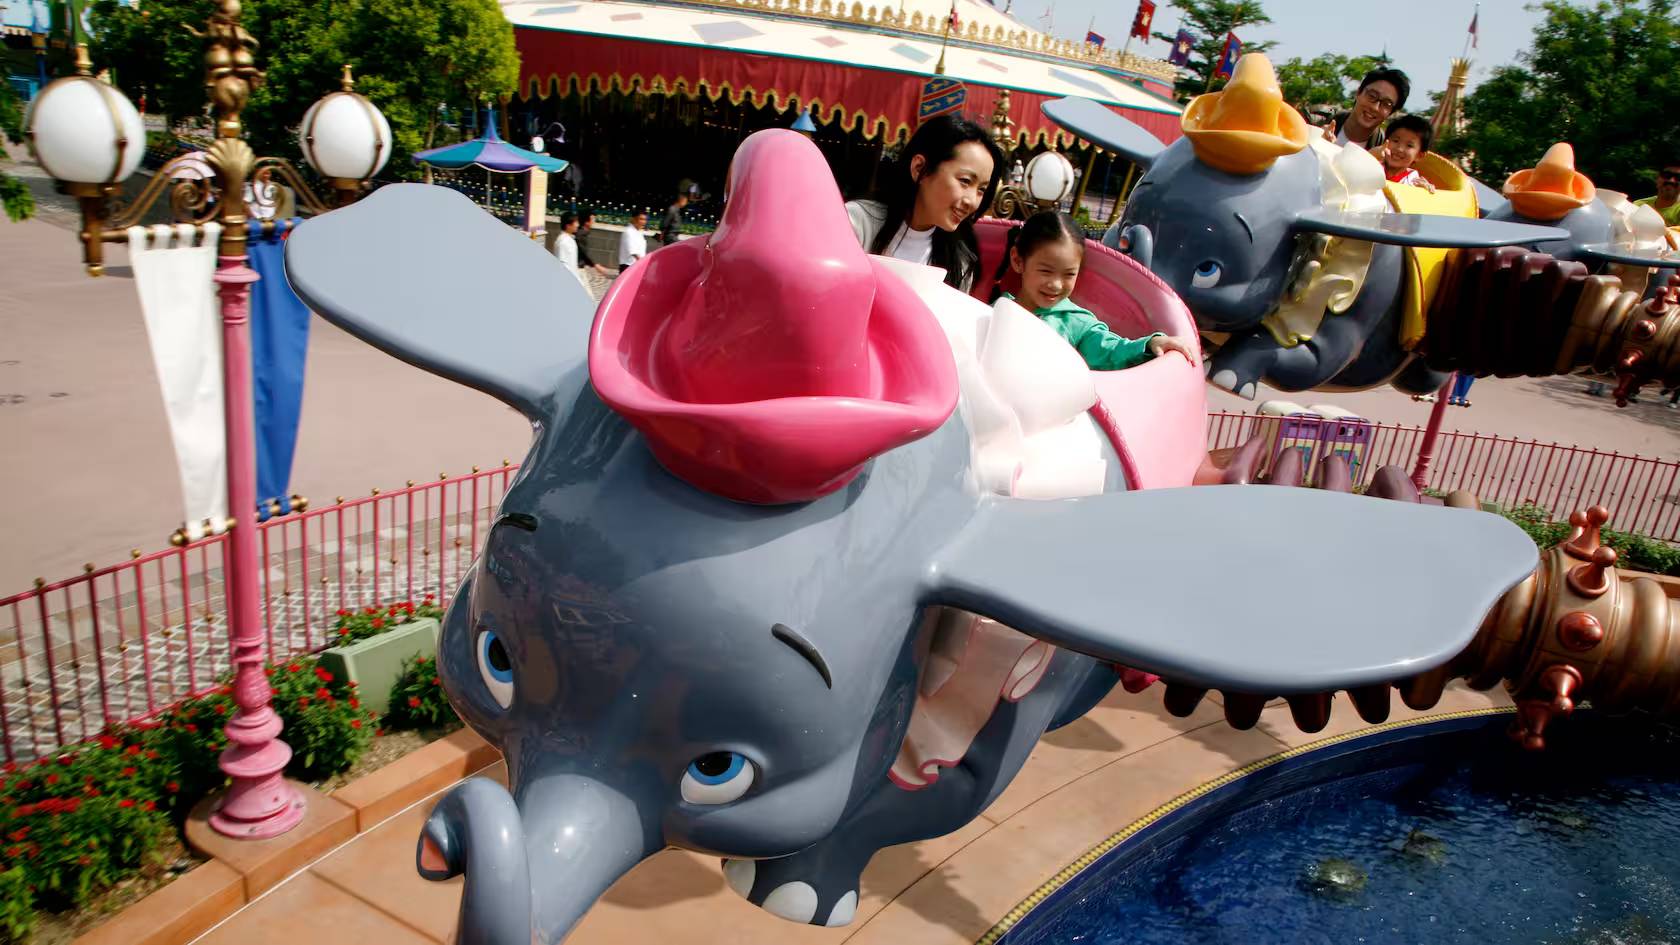 小飞象旋转世界 / Dumbo the Flying Elephant